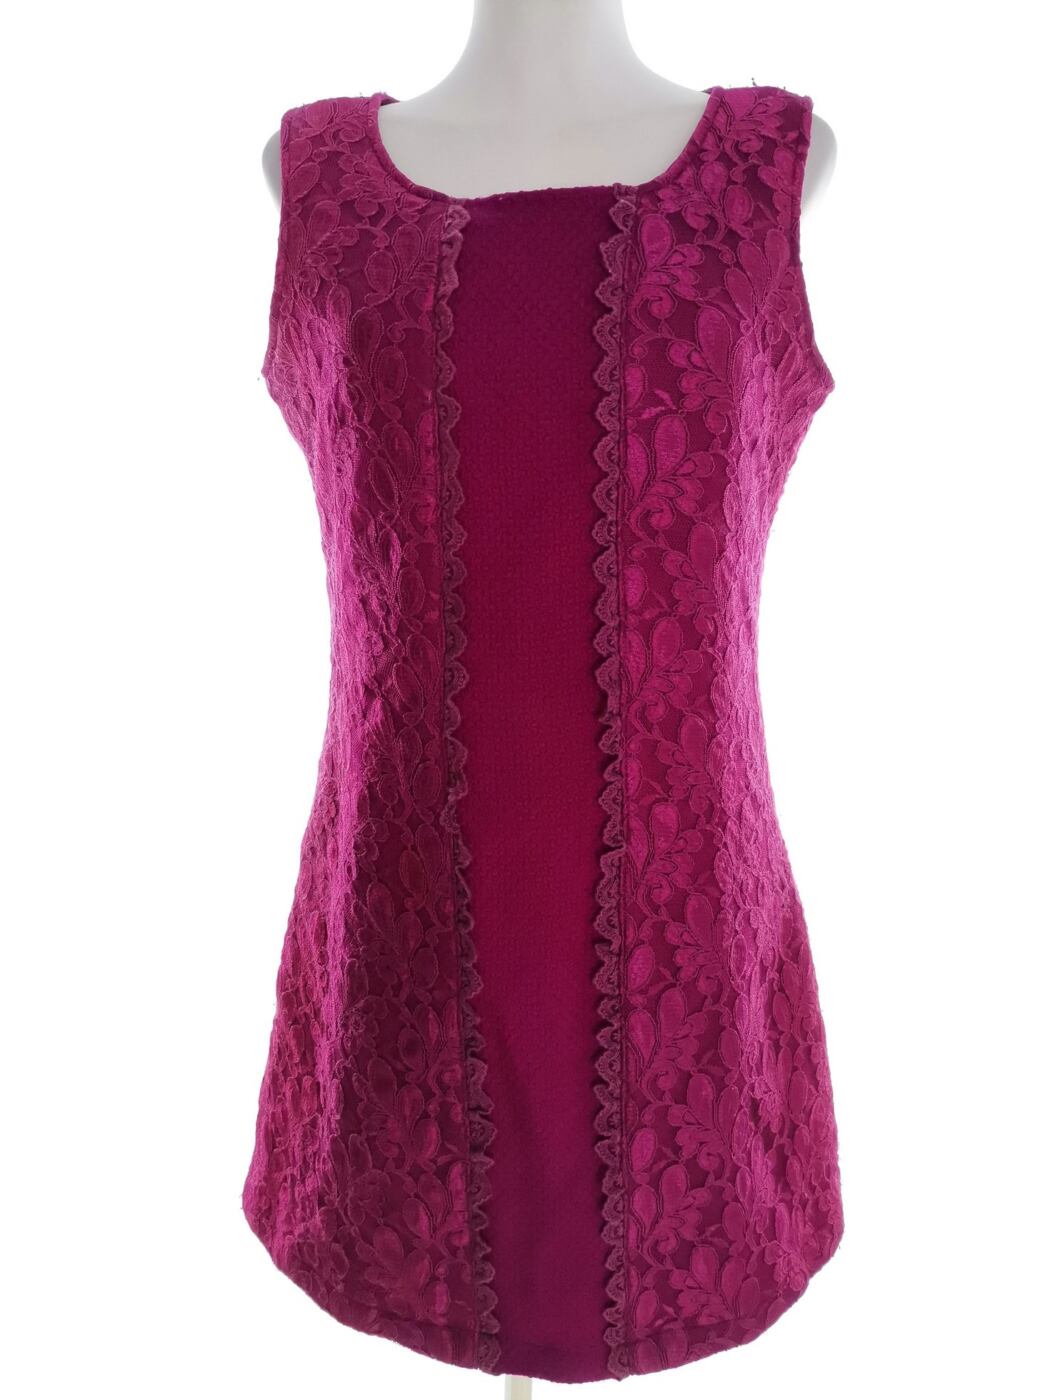 Charming Rozmiar 40 Kolor Fioletowy Okrągły dekolt Sukienka Prostokątna Bezrękawnik Do Kolan Materiał Wełna